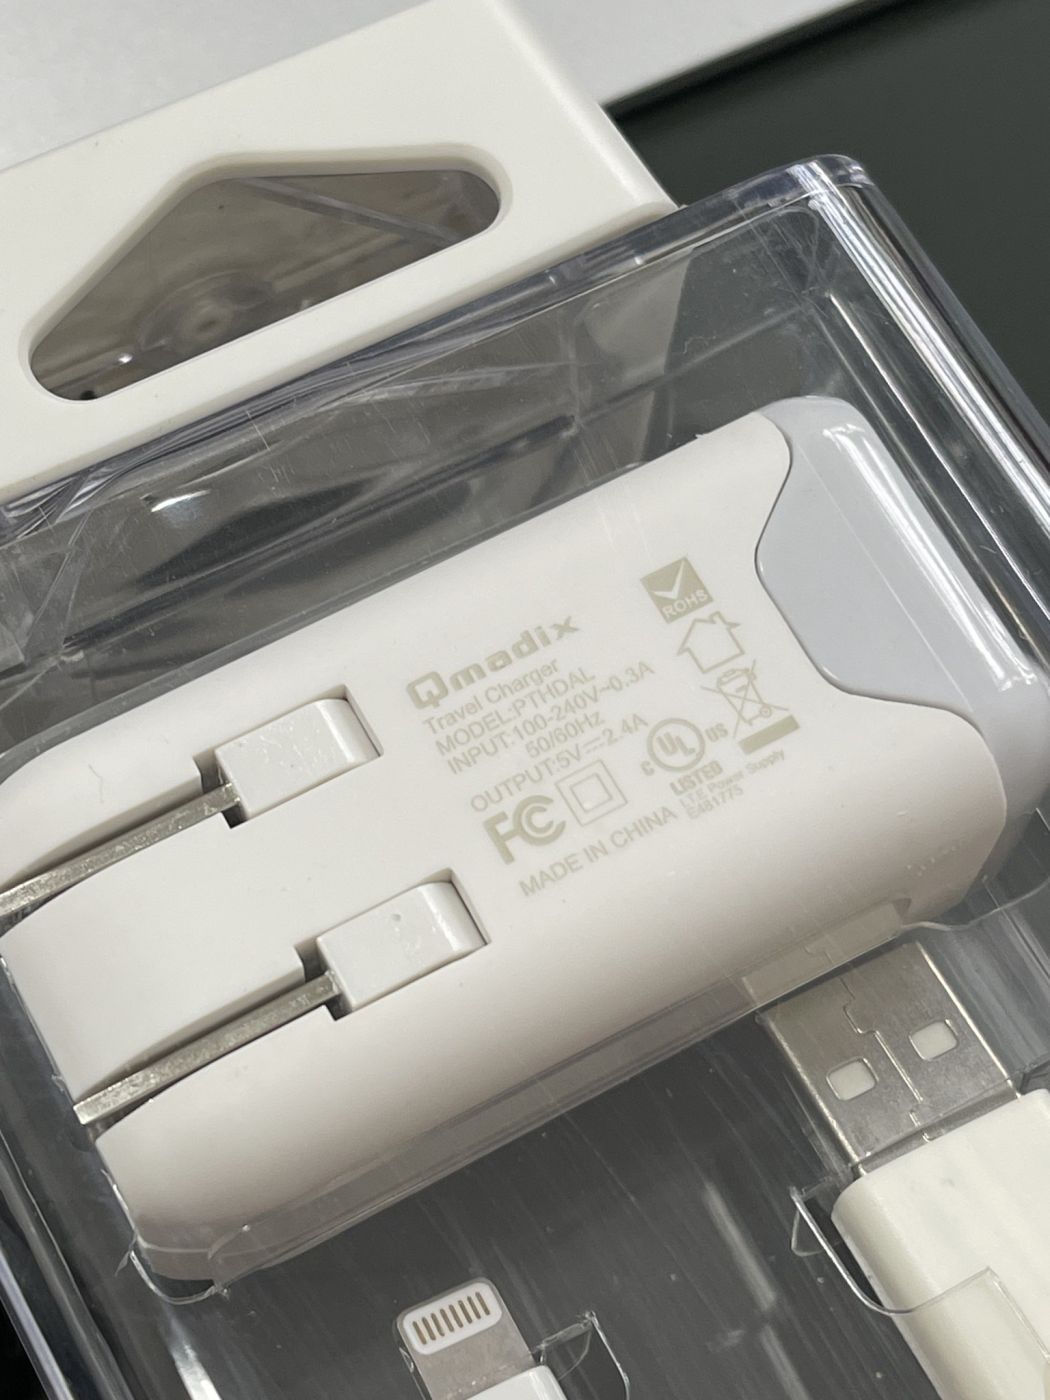 Sạc nhanh Qmadix cổng USB-A sạc nhanh 12W chuẩn MFI cho iphone ipad sâu ổng Li dài 1m8